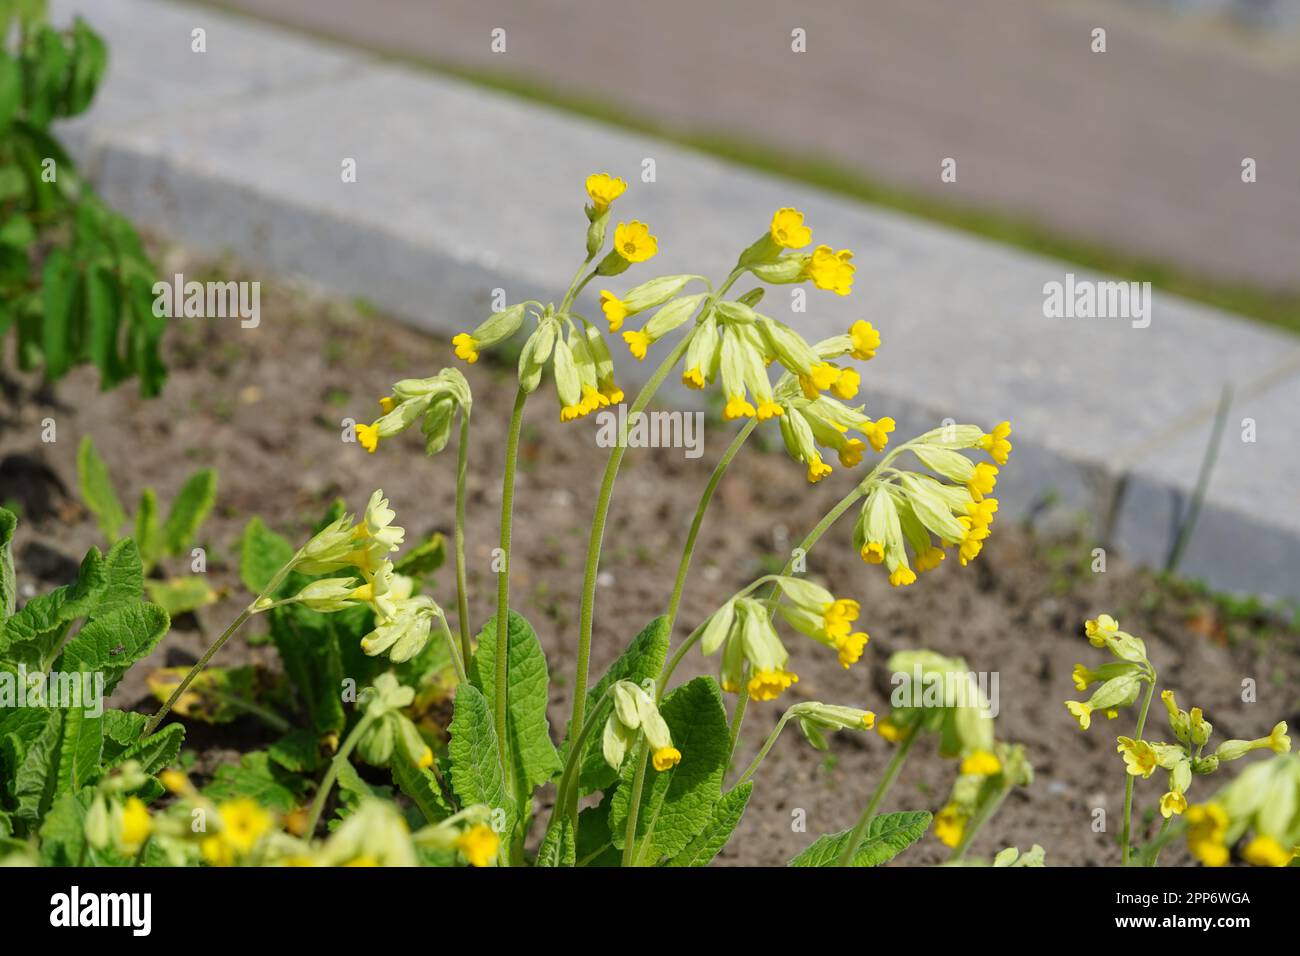 Primroses in a herb garden Stock Photo